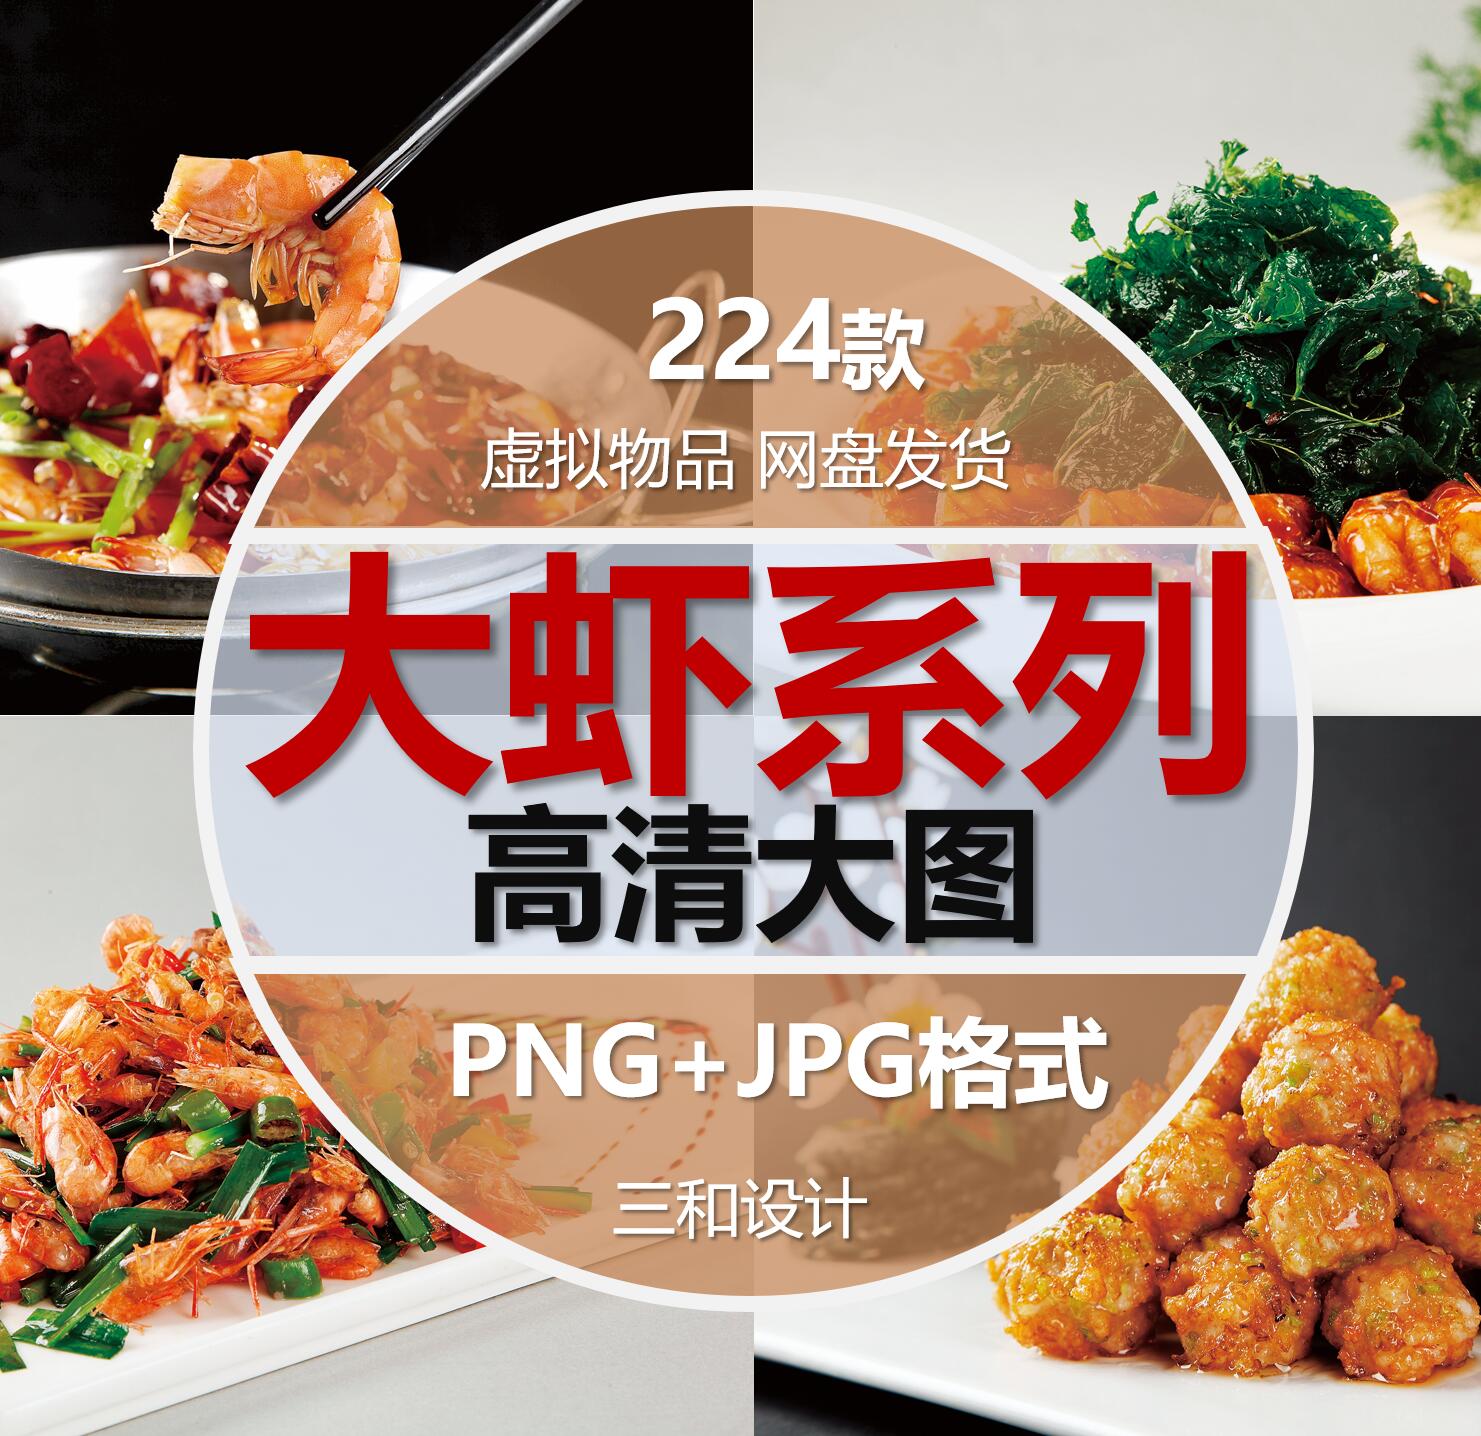 大虾系列龙虾虾球虾粥美团外卖菜单宣传设计素材高清JPG图片